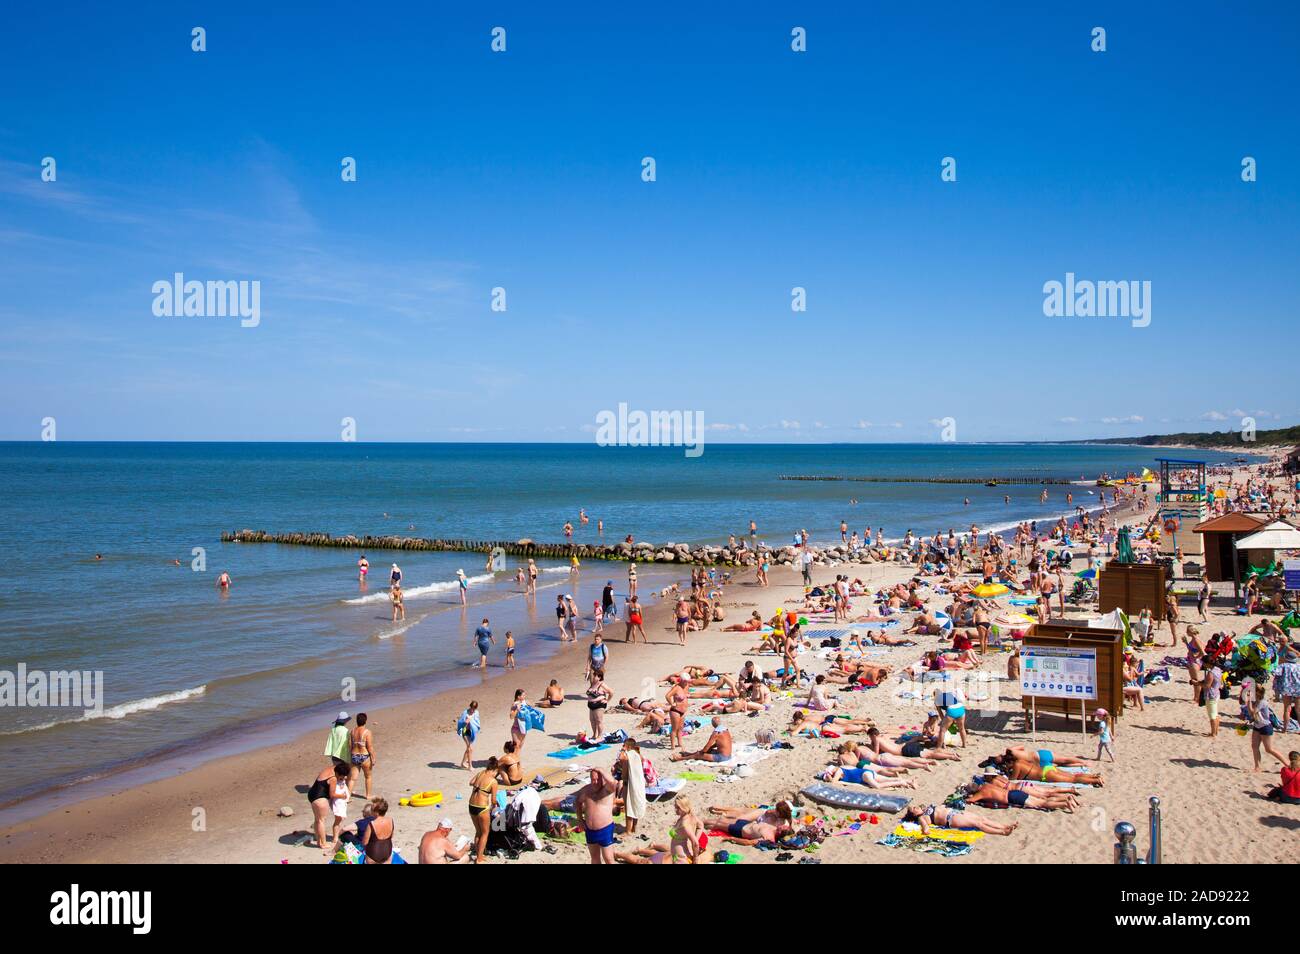 Una multitud de bañistas en la playa de Zelenogradsk situado en la costa del Mar Báltico, Rusia. Foto de stock